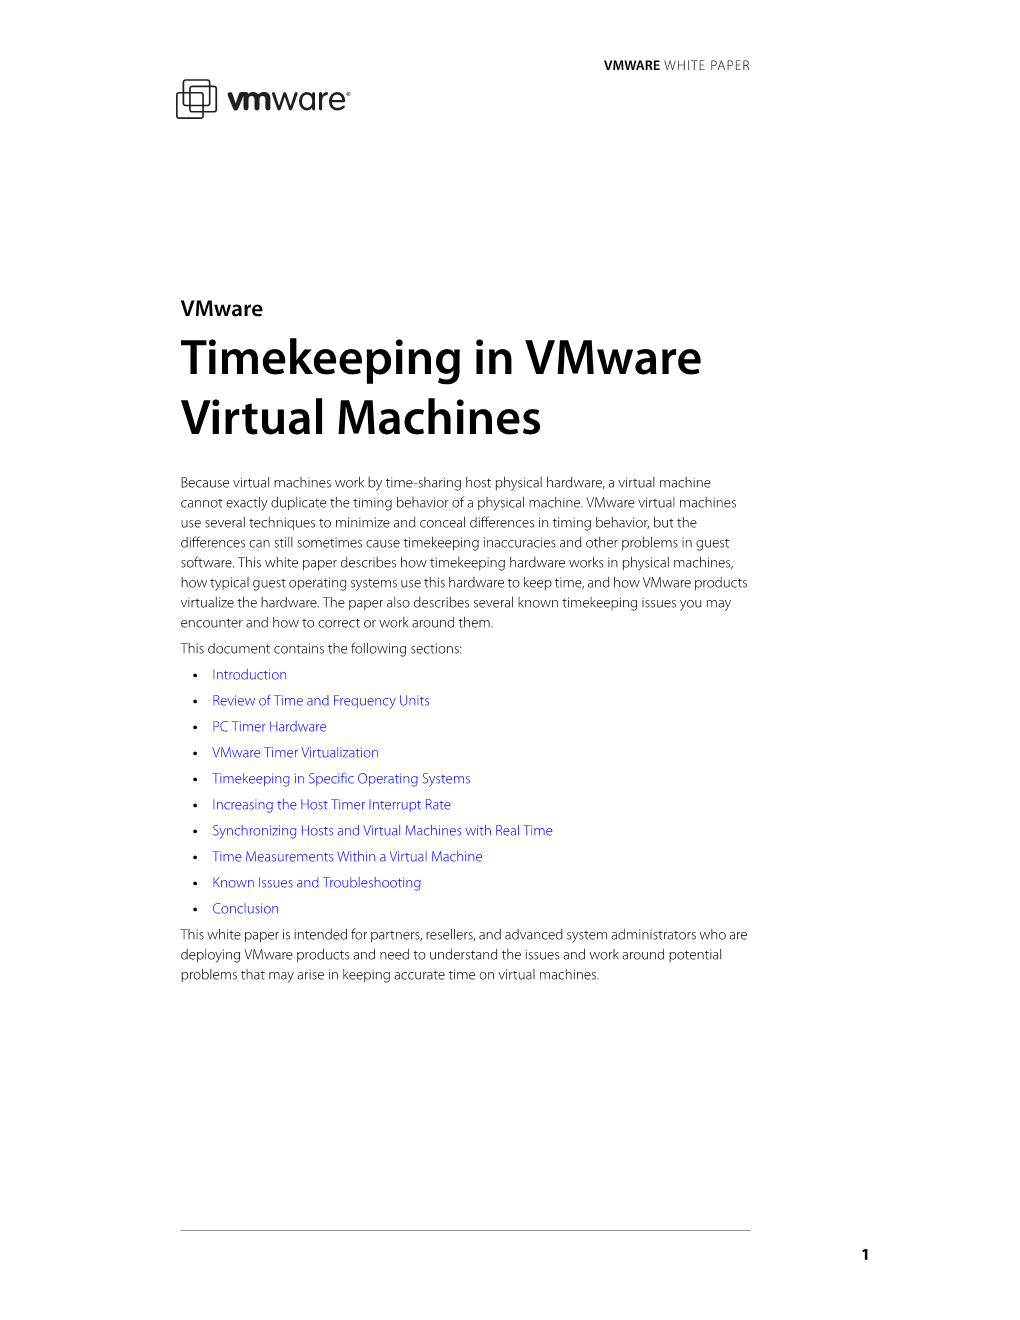 Timekeeping in Vmware Virtual Machines